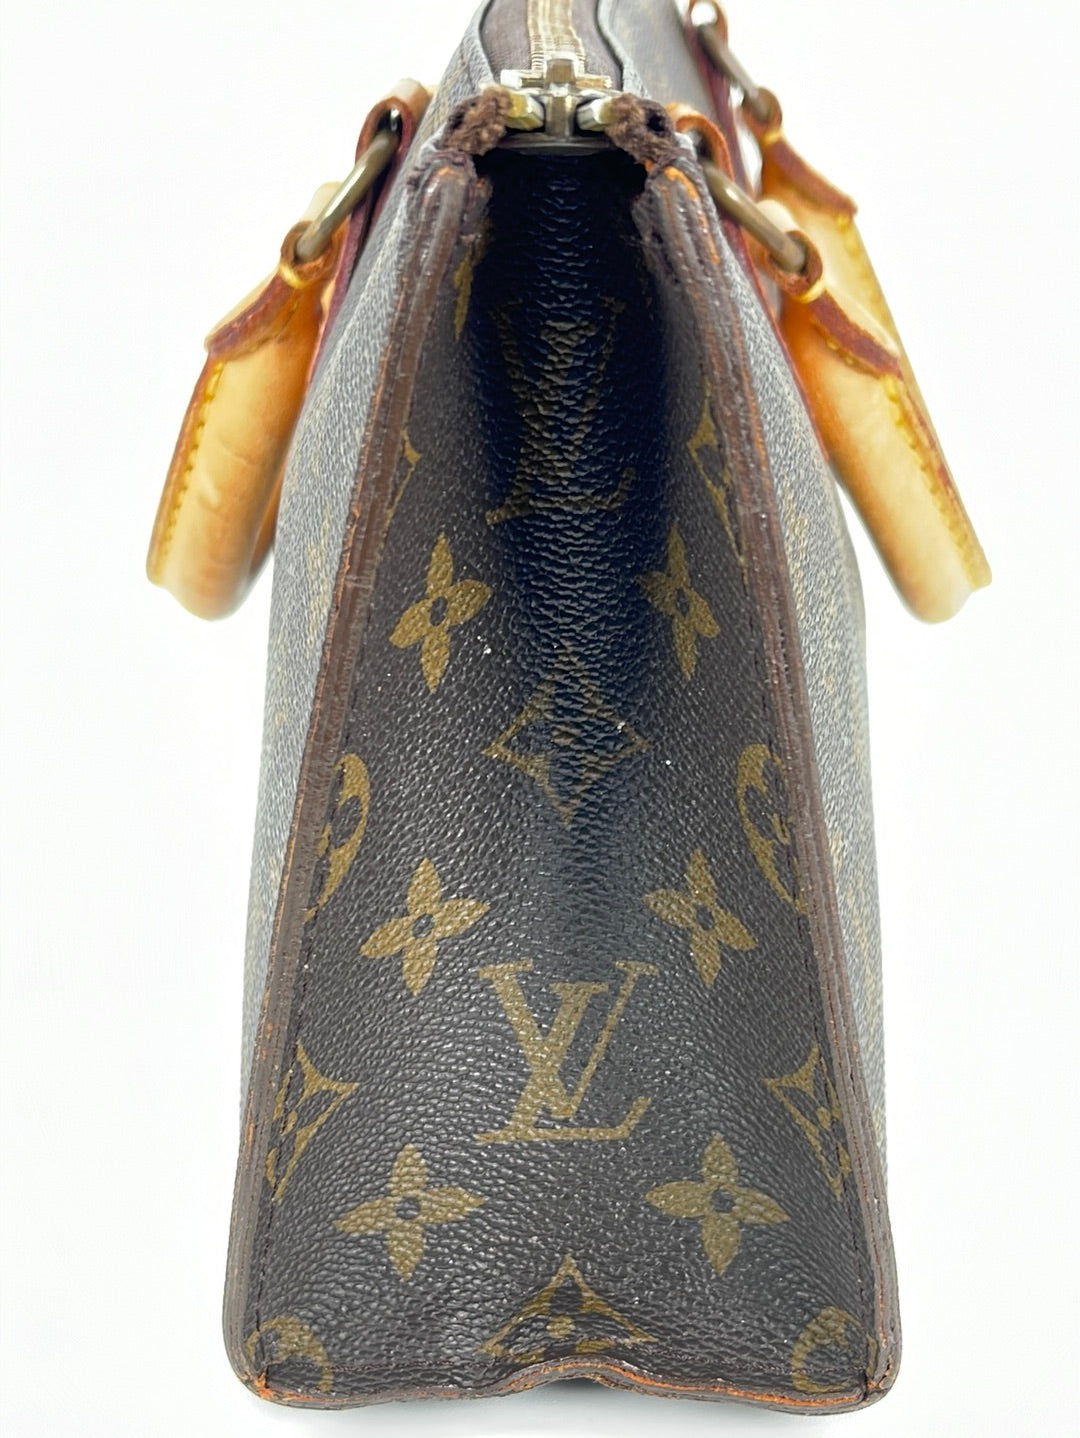 Louis Vuitton Sac Tricot Bag